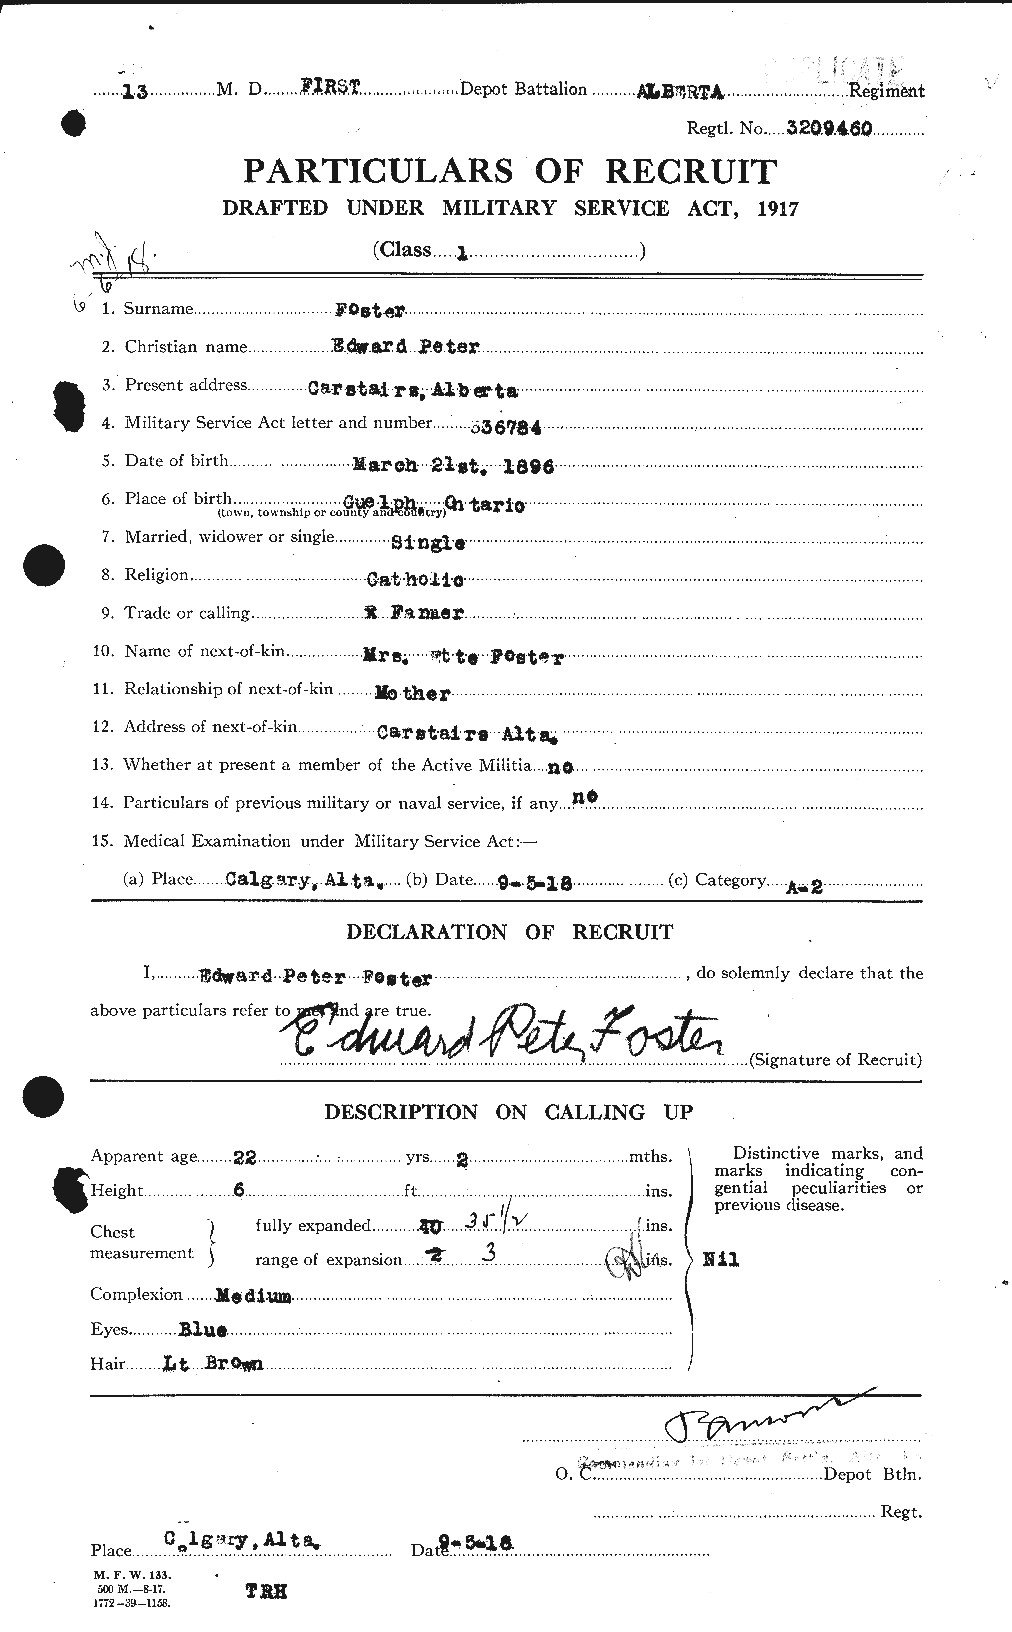 Dossiers du Personnel de la Première Guerre mondiale - CEC 330587a